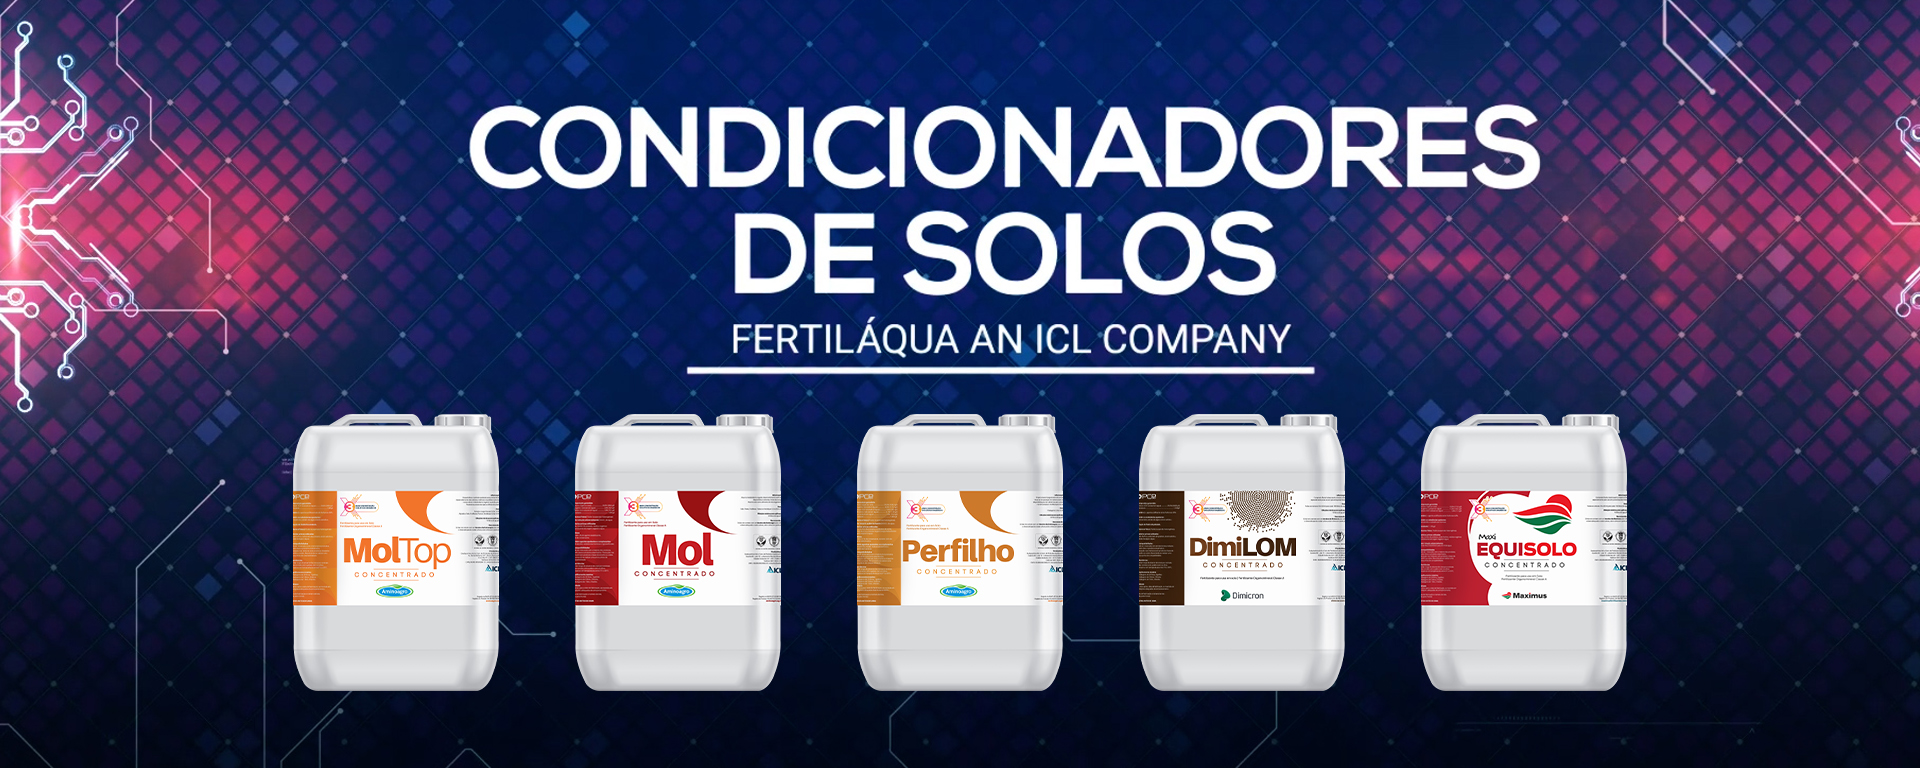 Fertiláqua lança versão concentrada de seus Condicionadores de Solos